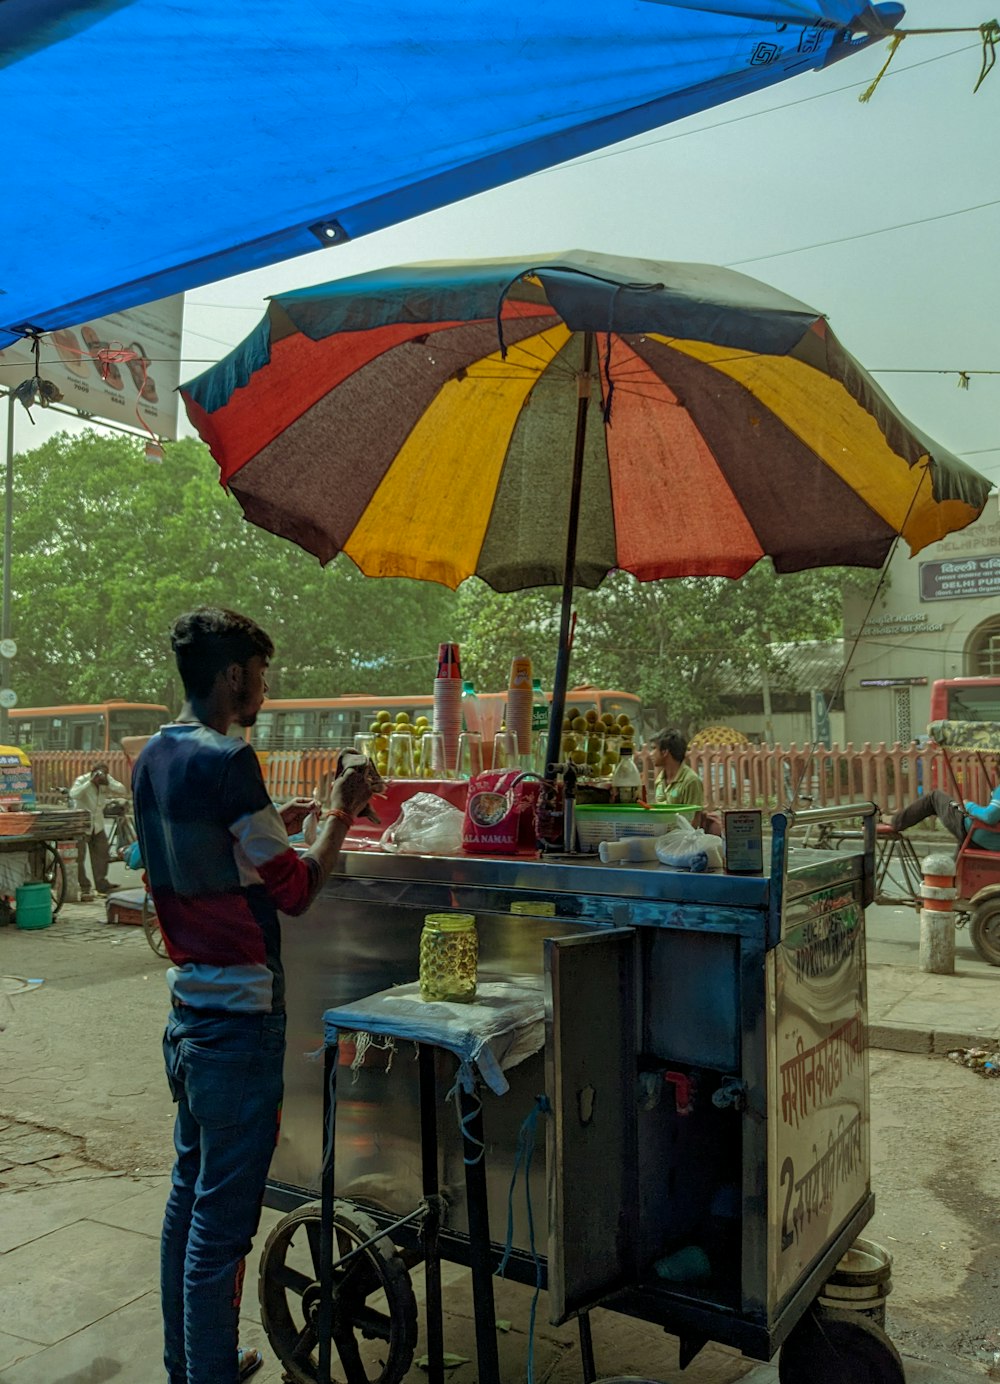 a person standing under an umbrella near a food cart